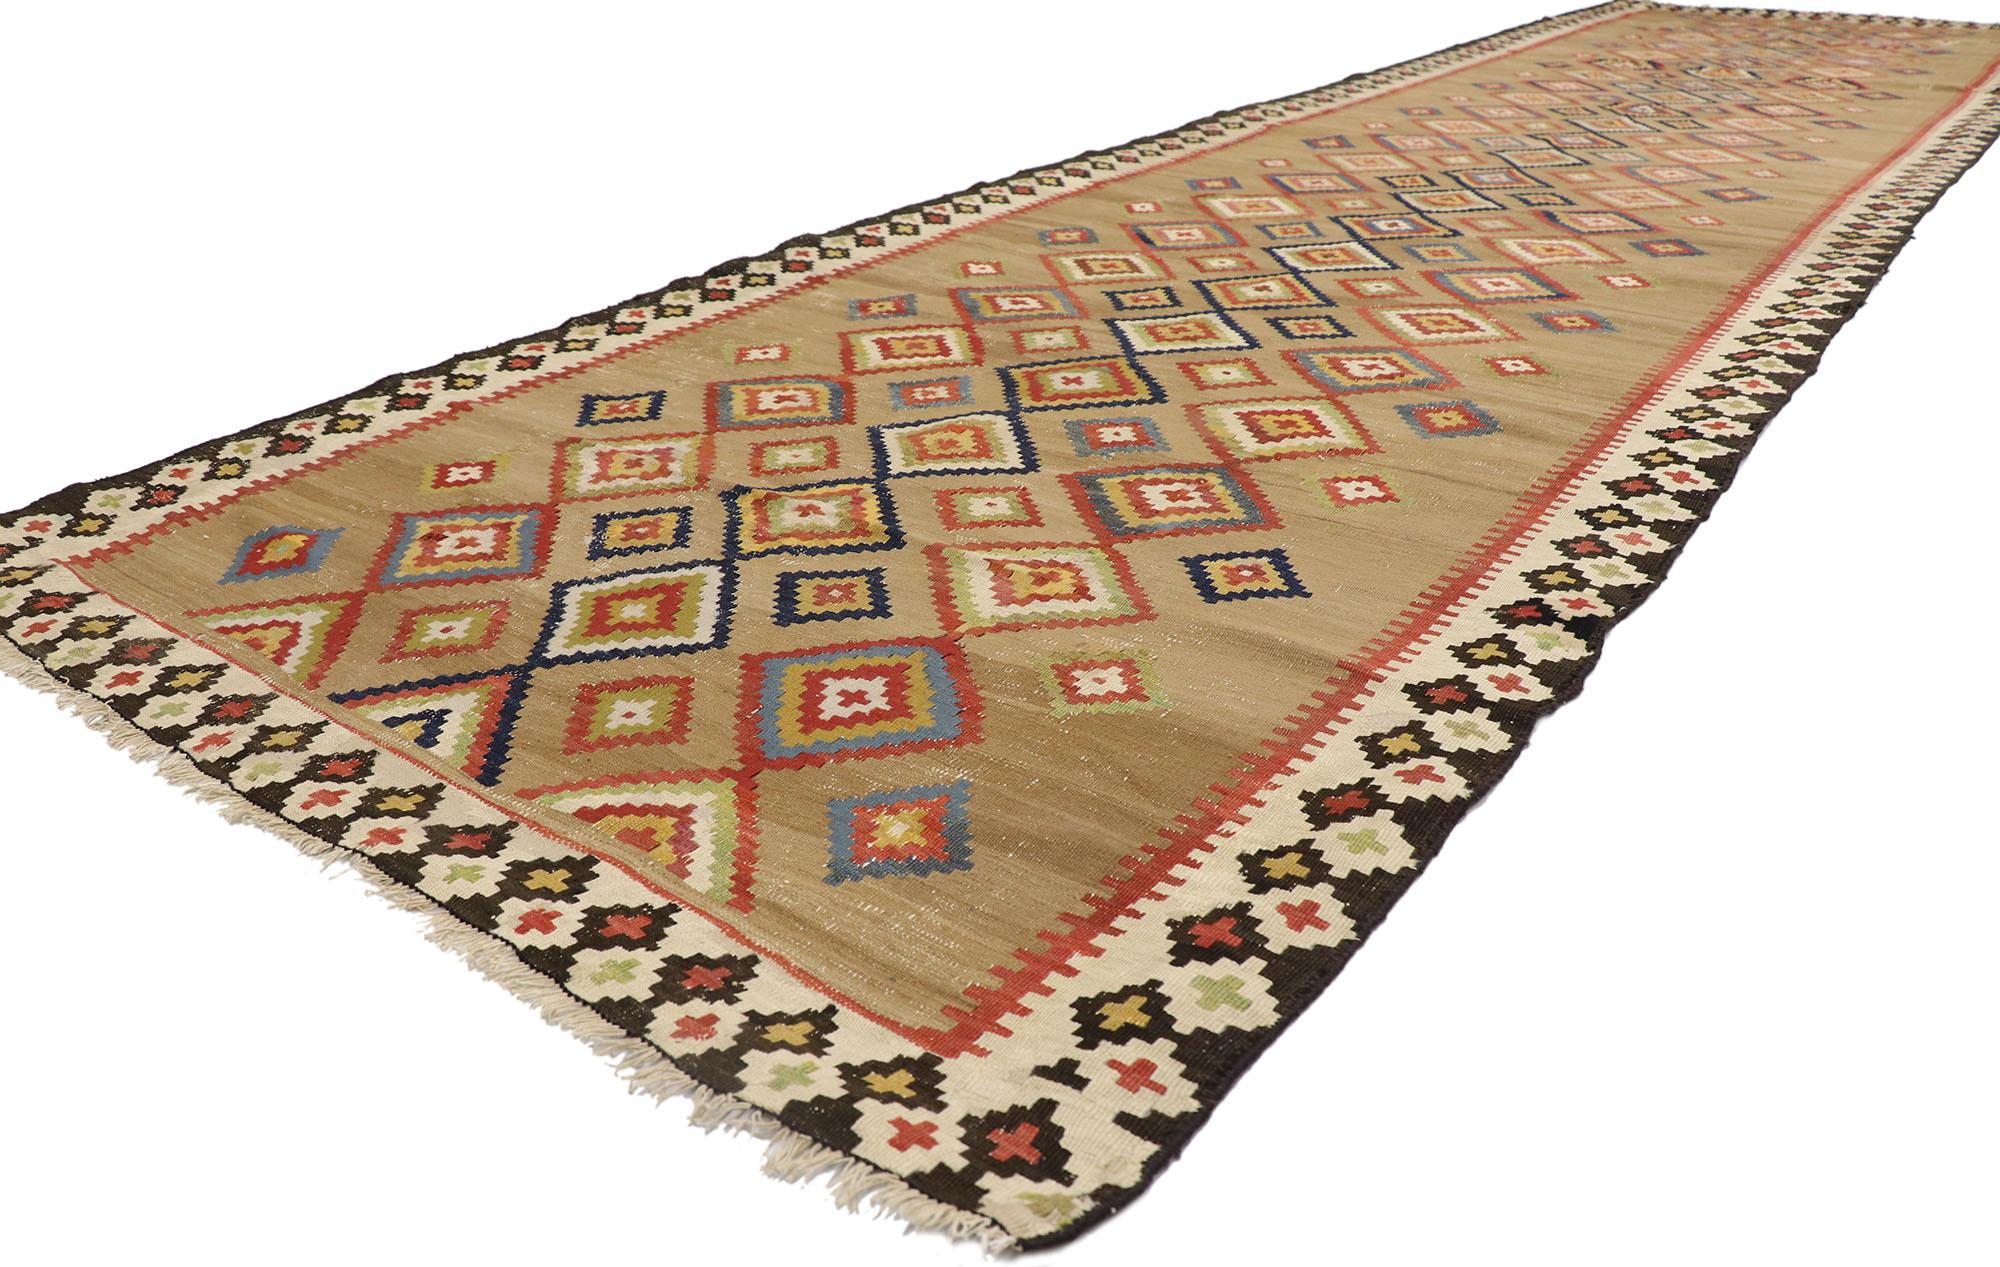 78016 Türkischer Vintage-Kilim-Teppich, 04'02 x 15'00.

Dieser handgewebte türkische Kelimteppich aus Wolle ist eine faszinierende Verkörperung gewebter Schönheit, die zum Verweilen einlädt. Das abgewetzte braune Feld enthüllt eine bezaubernde